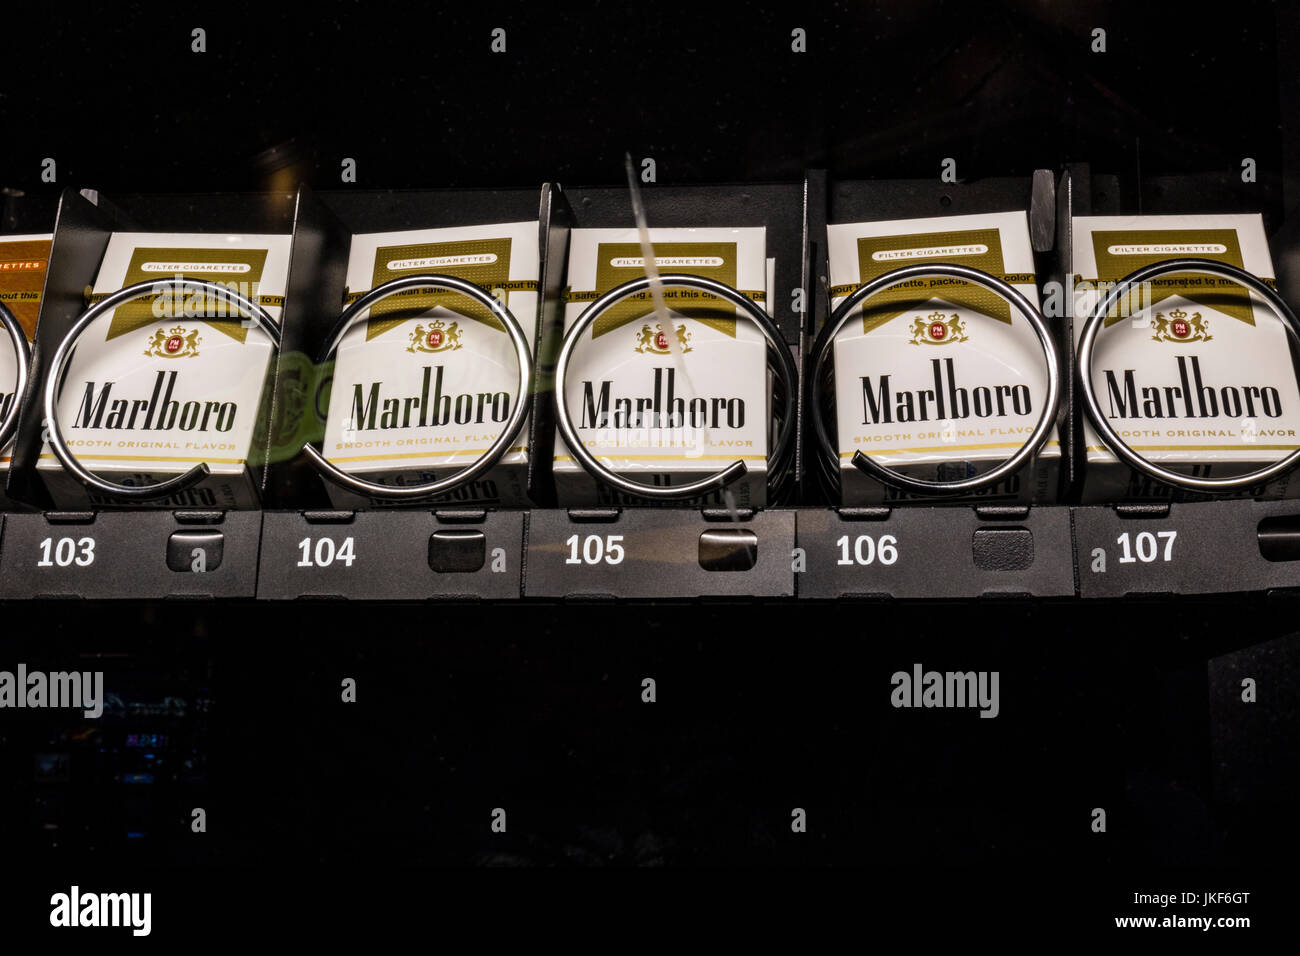 Las Vegas - ca. Juli 2017: Packs von Marlboro Zigaretten in einem Automaten. Marlboro ist ein Produkt der Altria Group II Stockfoto